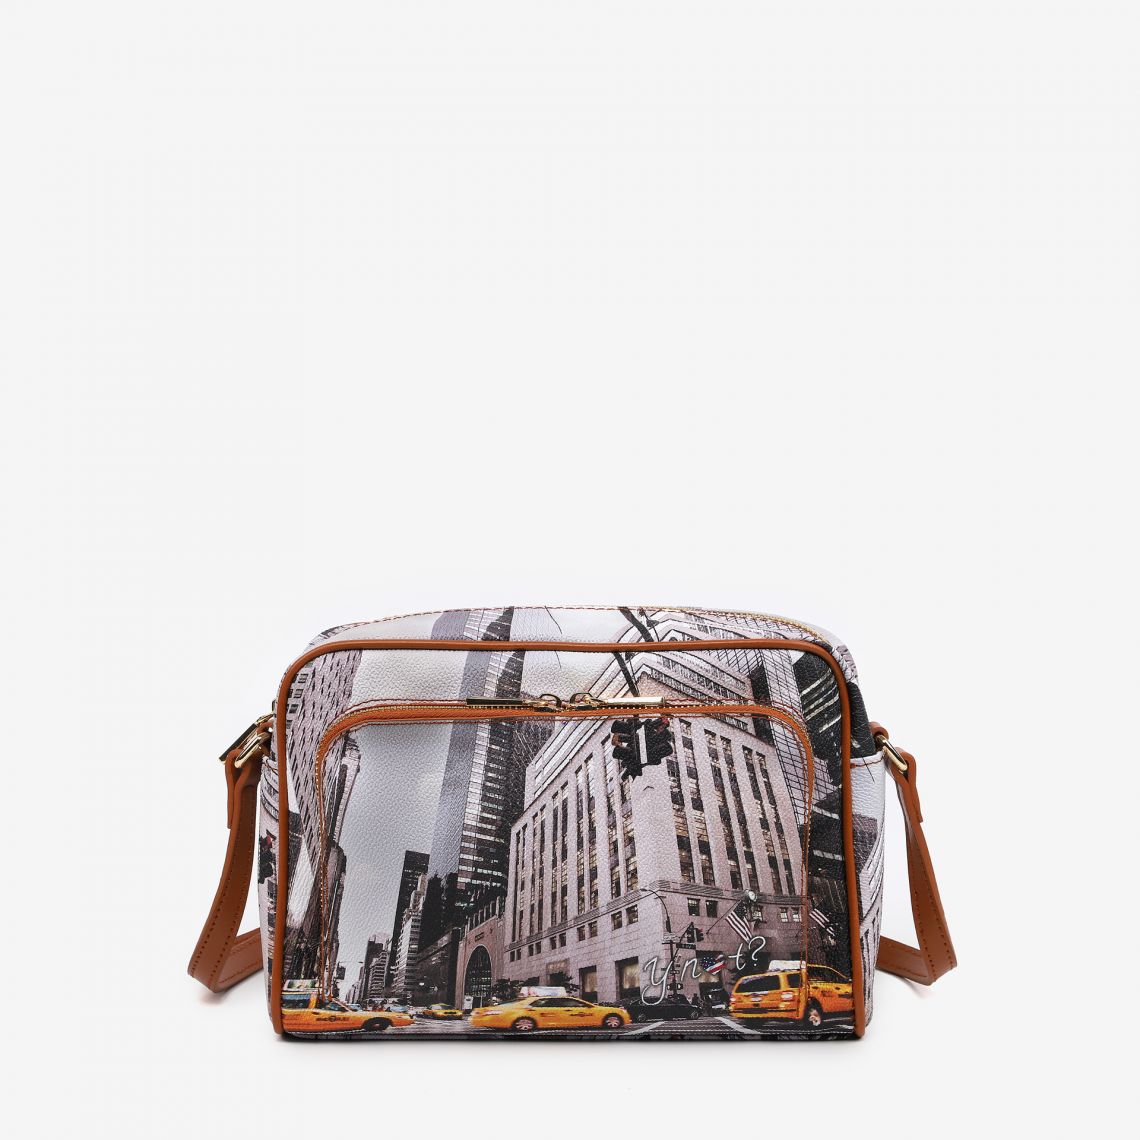 (image for) borse in saldo Postina 5th Avenue Comperare